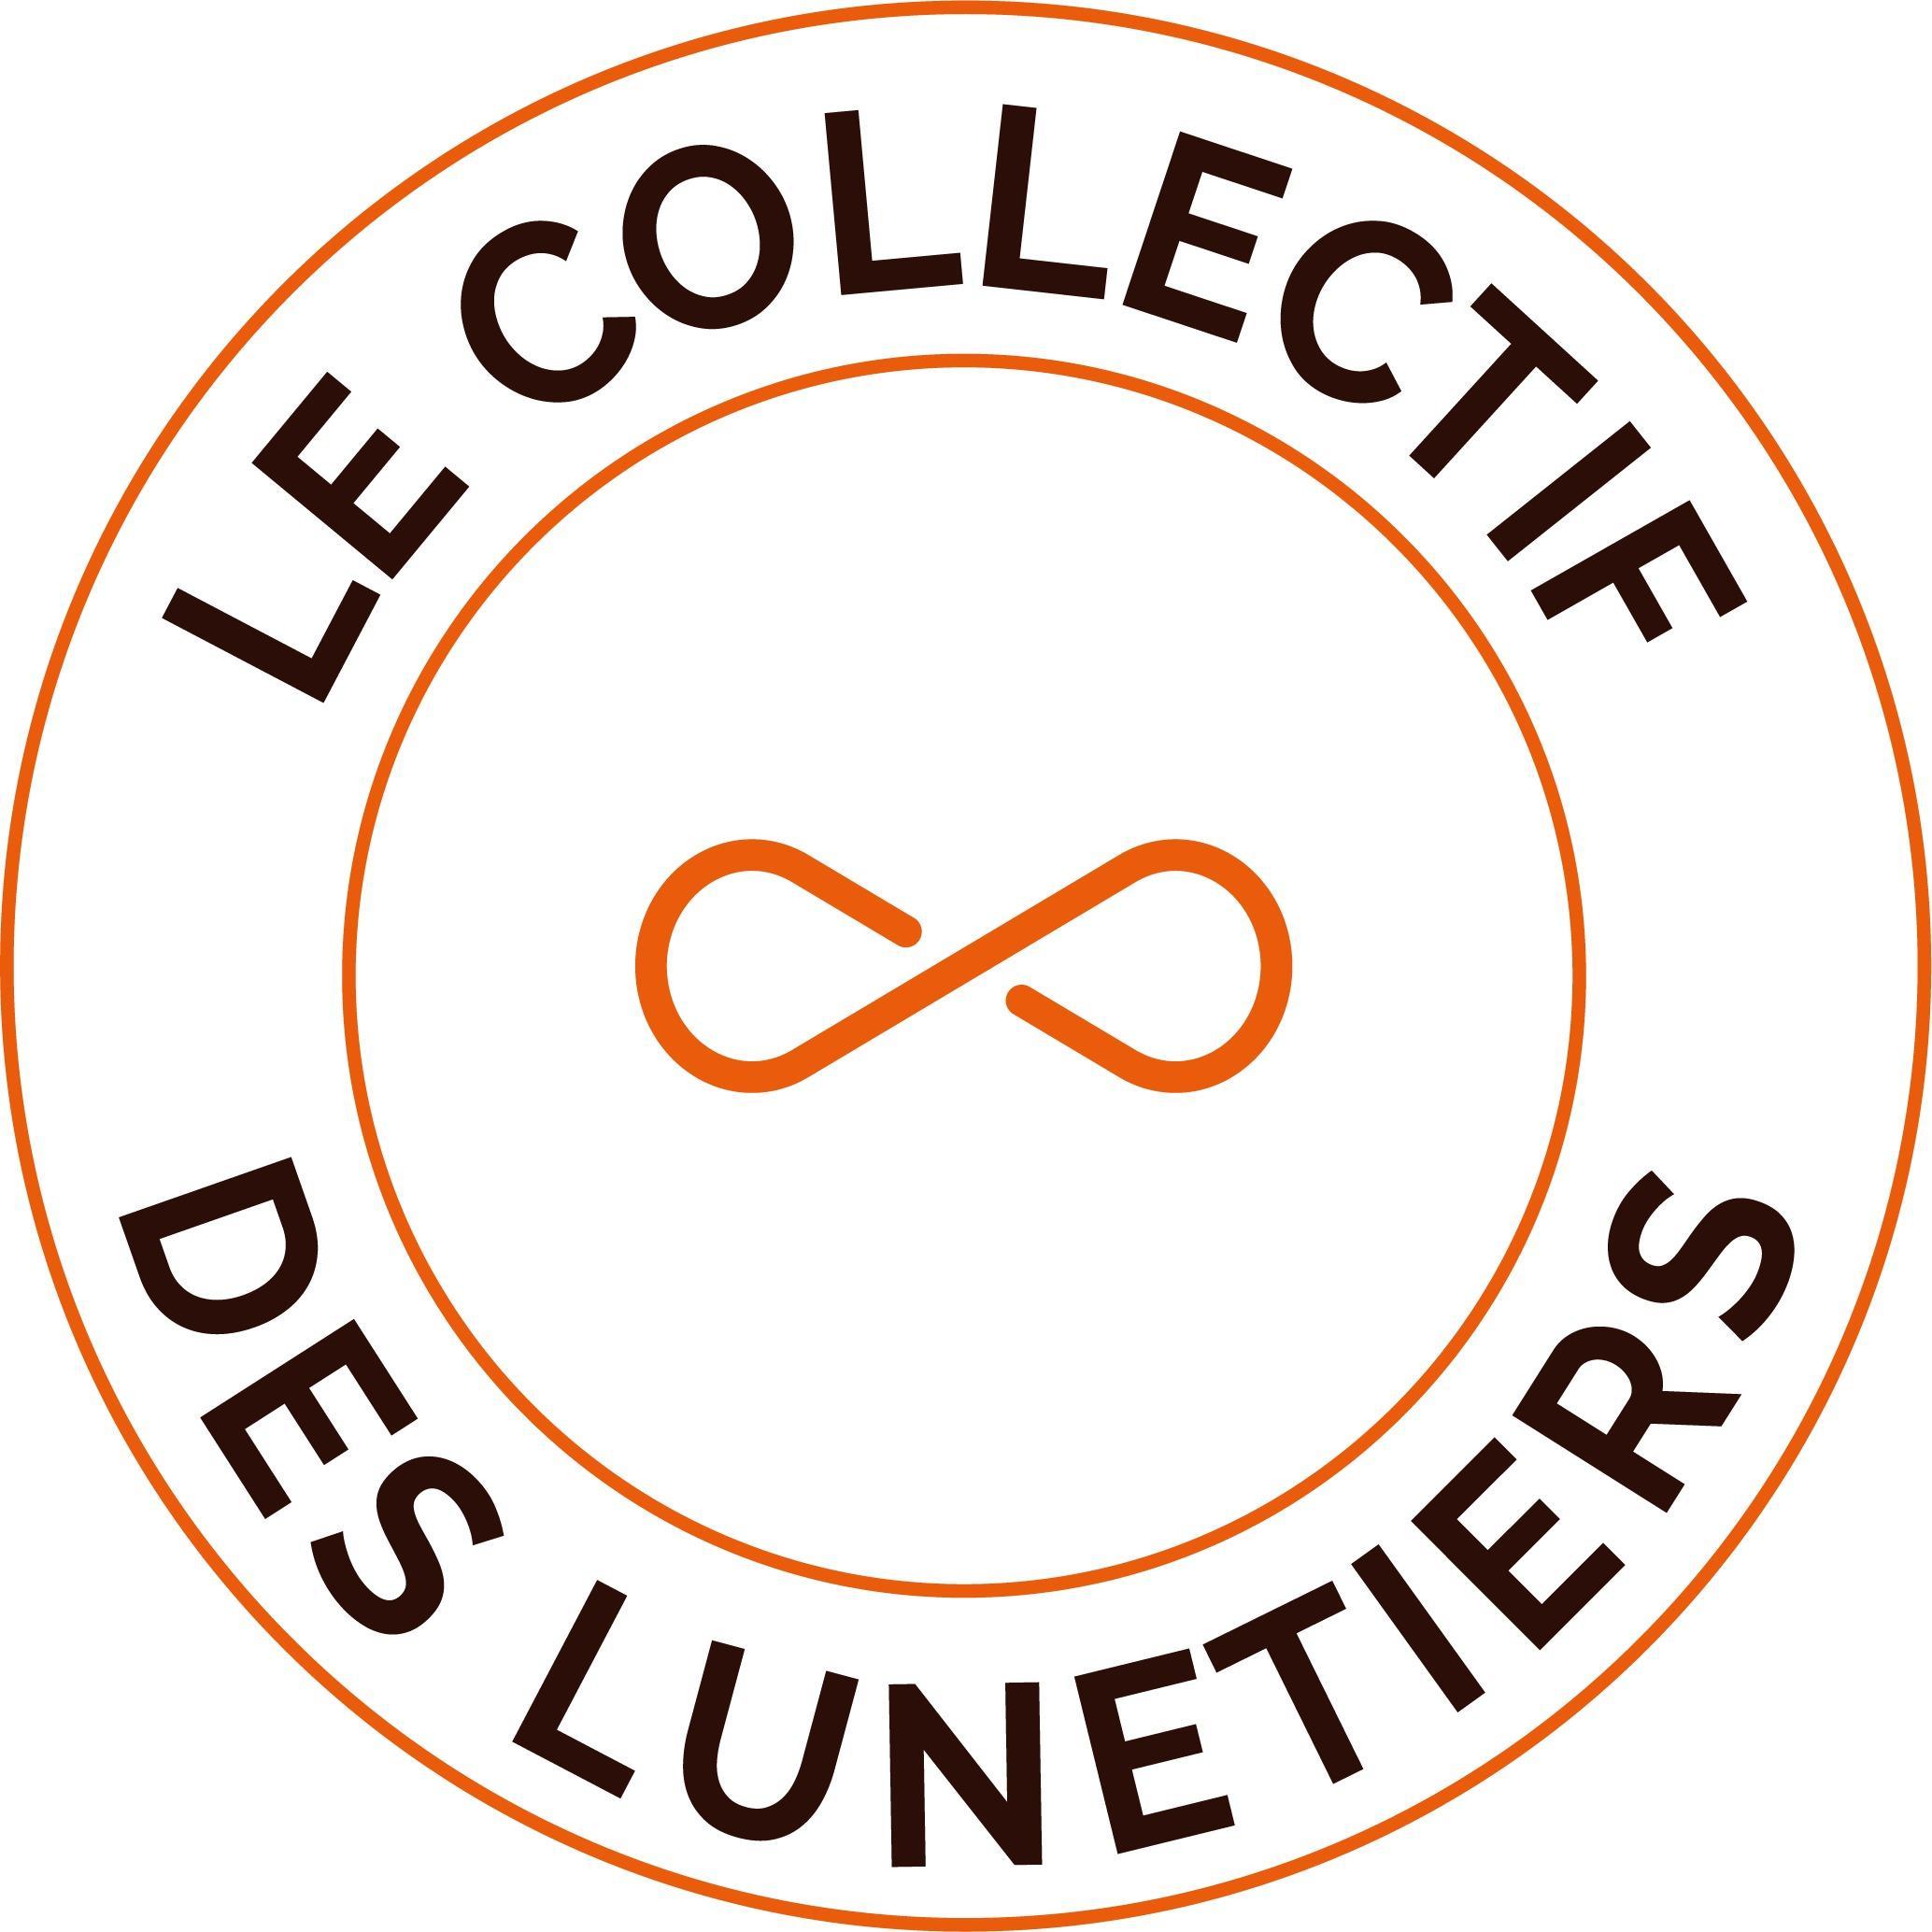 Le Collectif Des Lunetiers Nantes